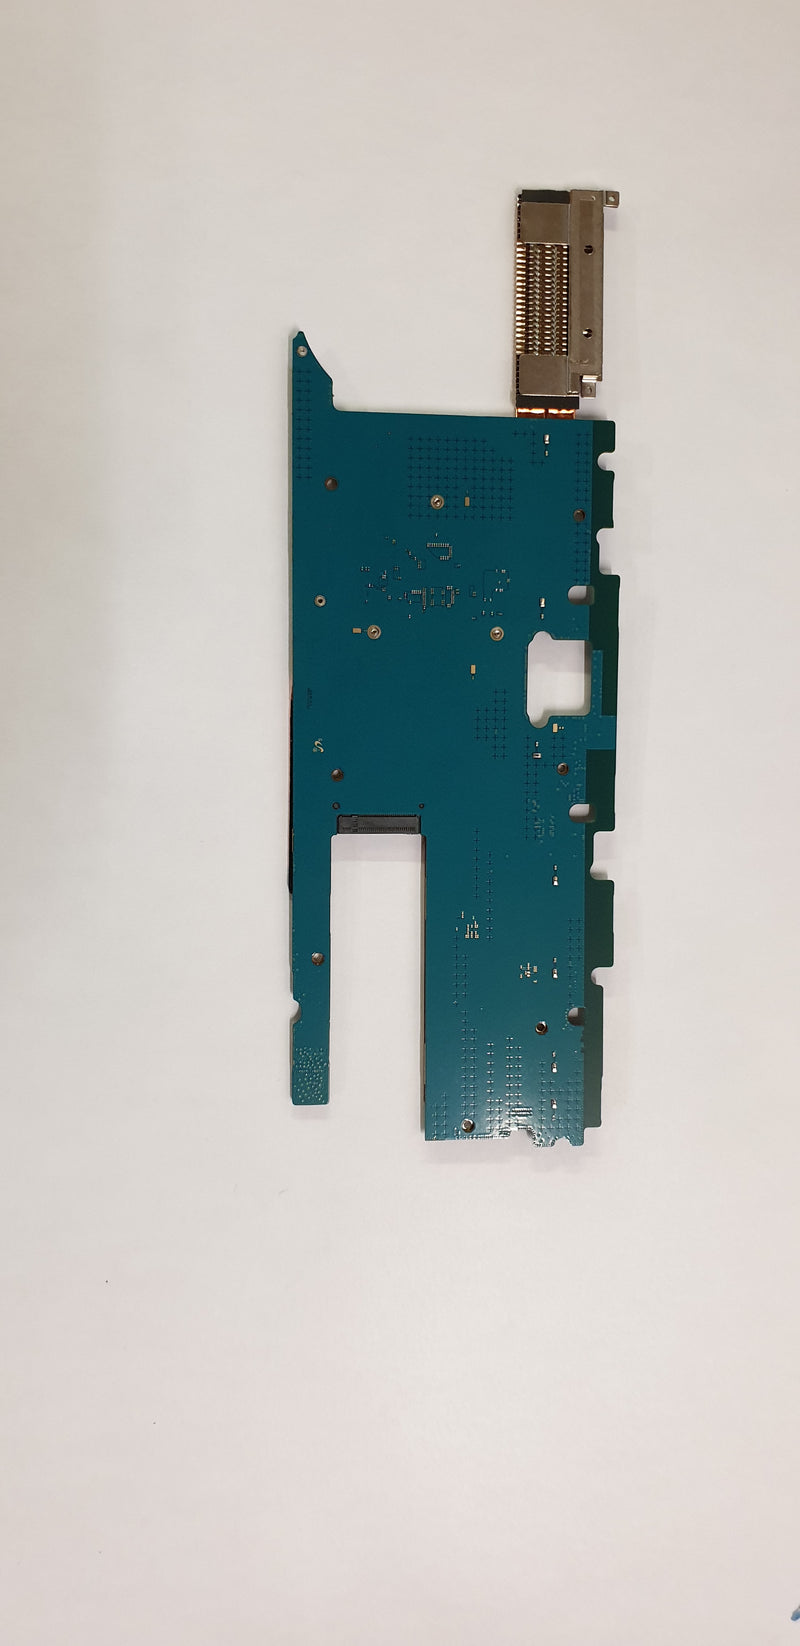 Placa base SAMSUNG Galaxy Book Intel Core i5 7200U Gráficos Intel HD 620 GH62-00056A